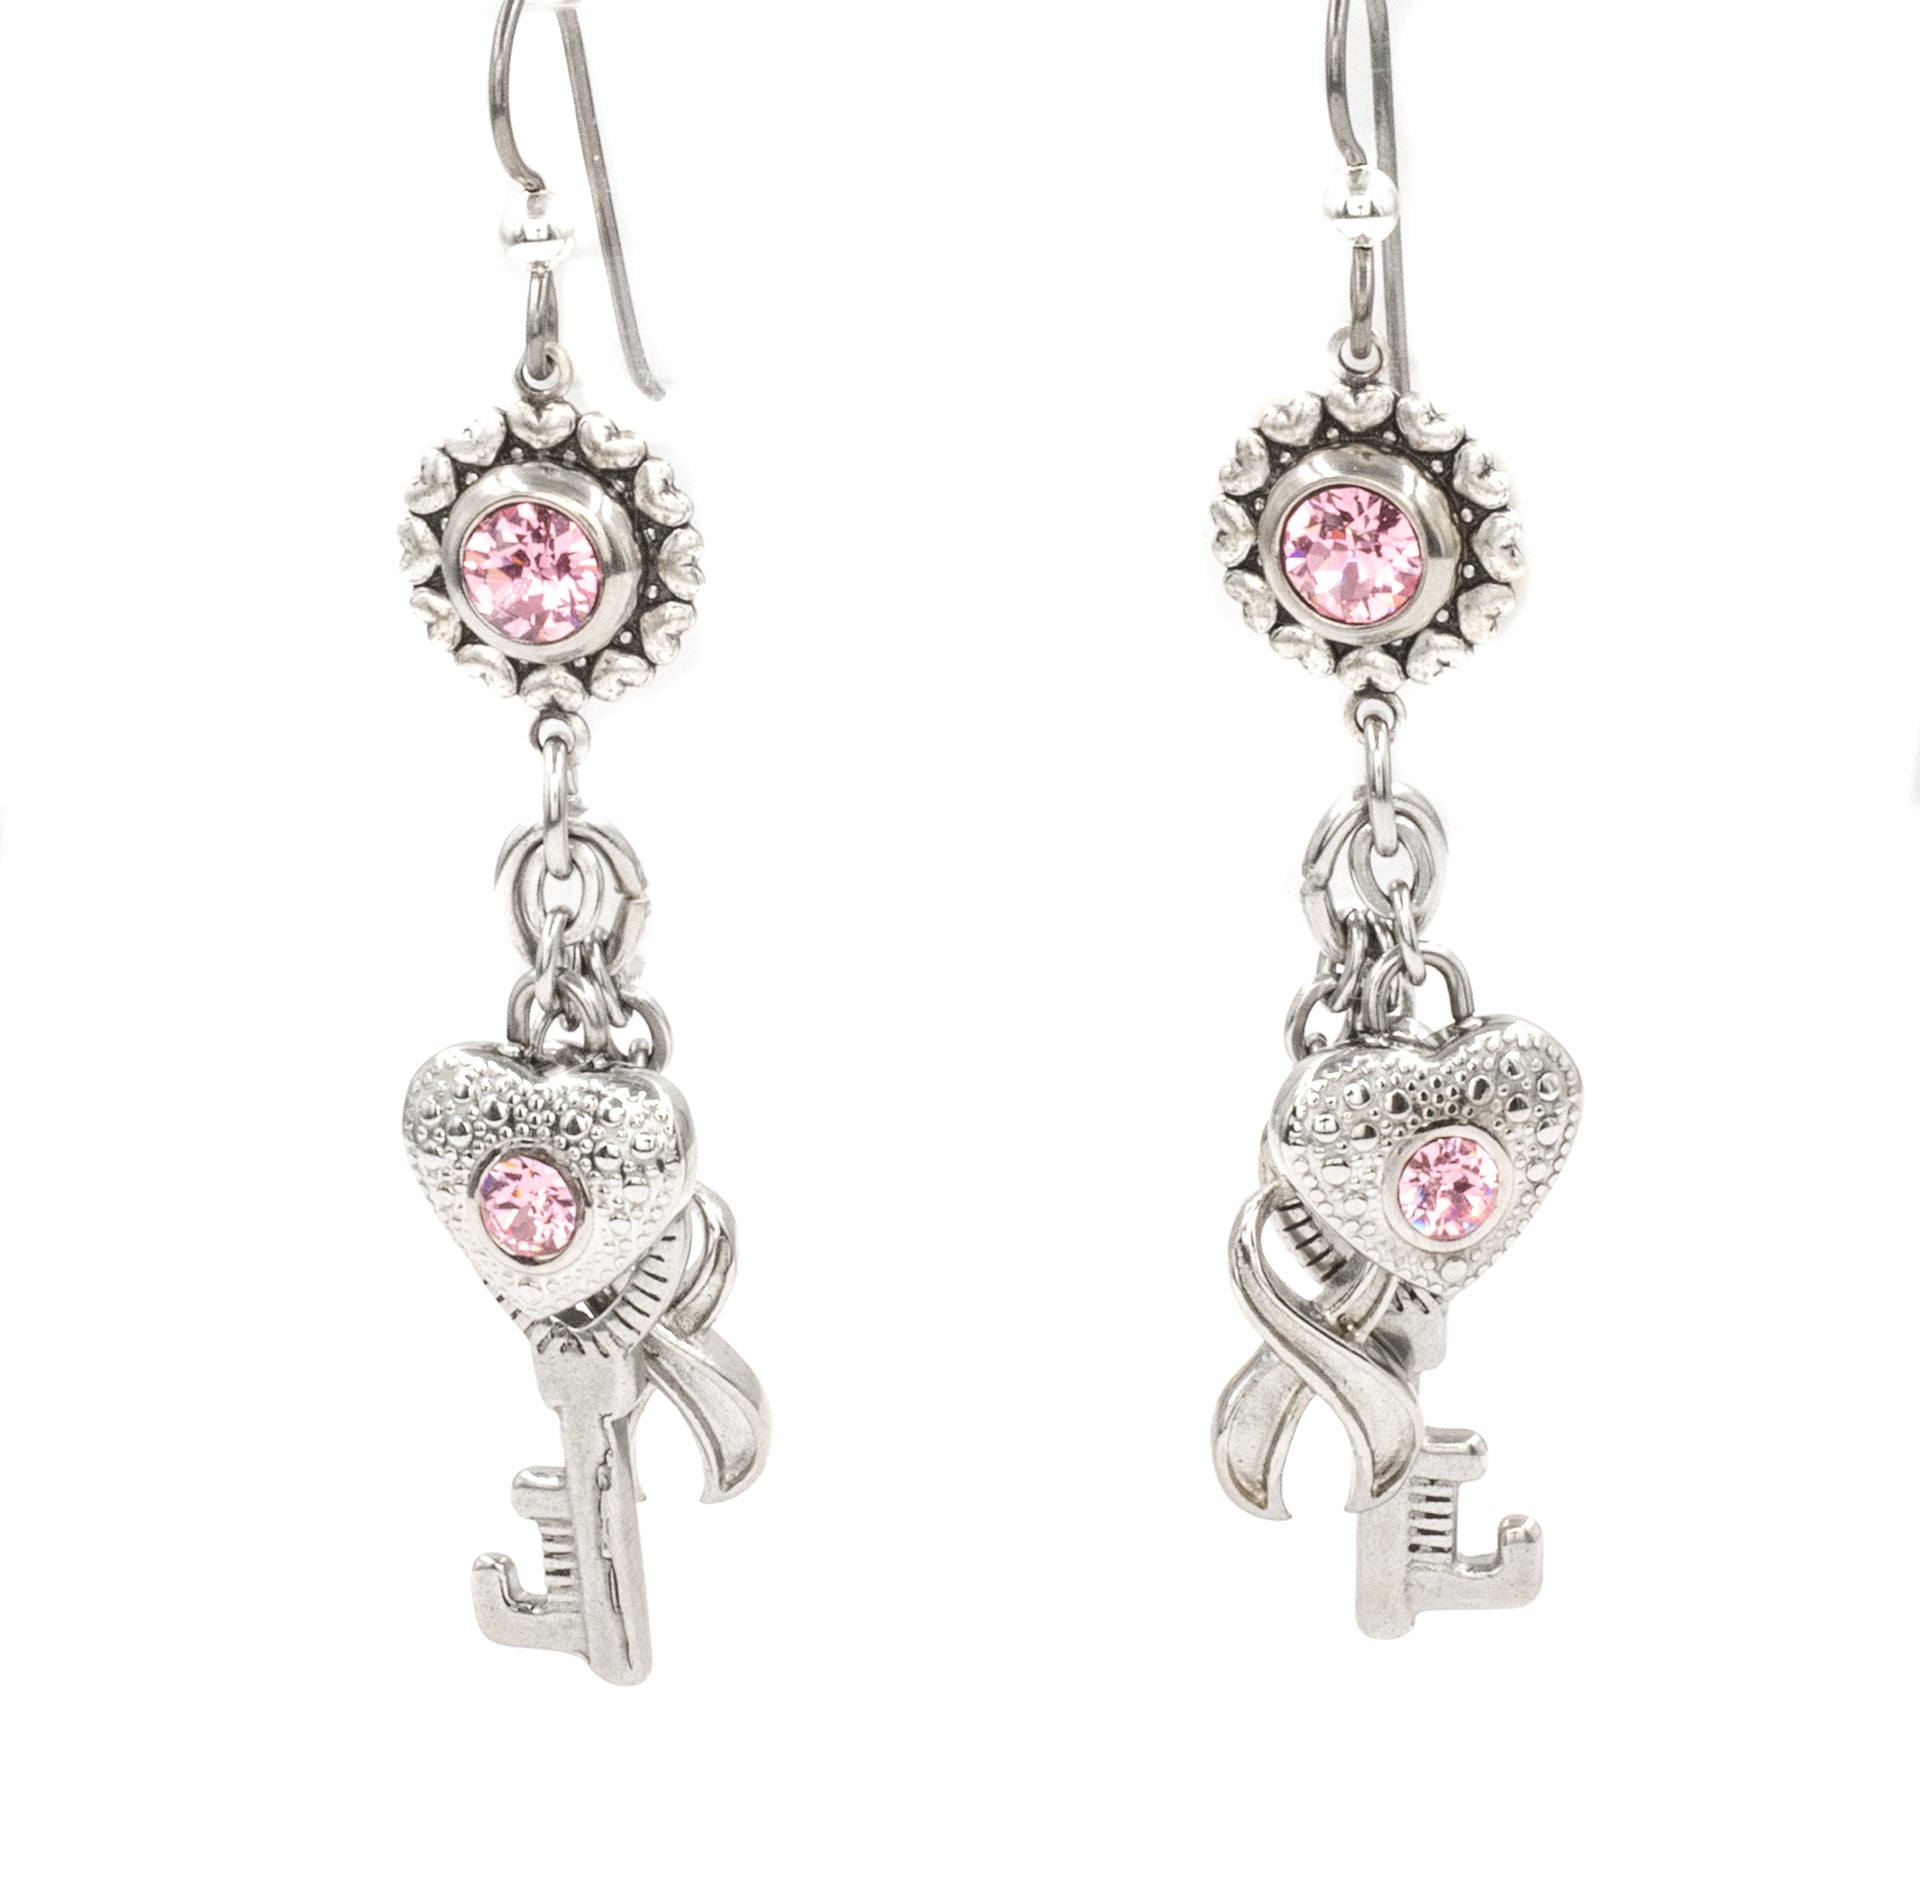 Pink awareness earrings